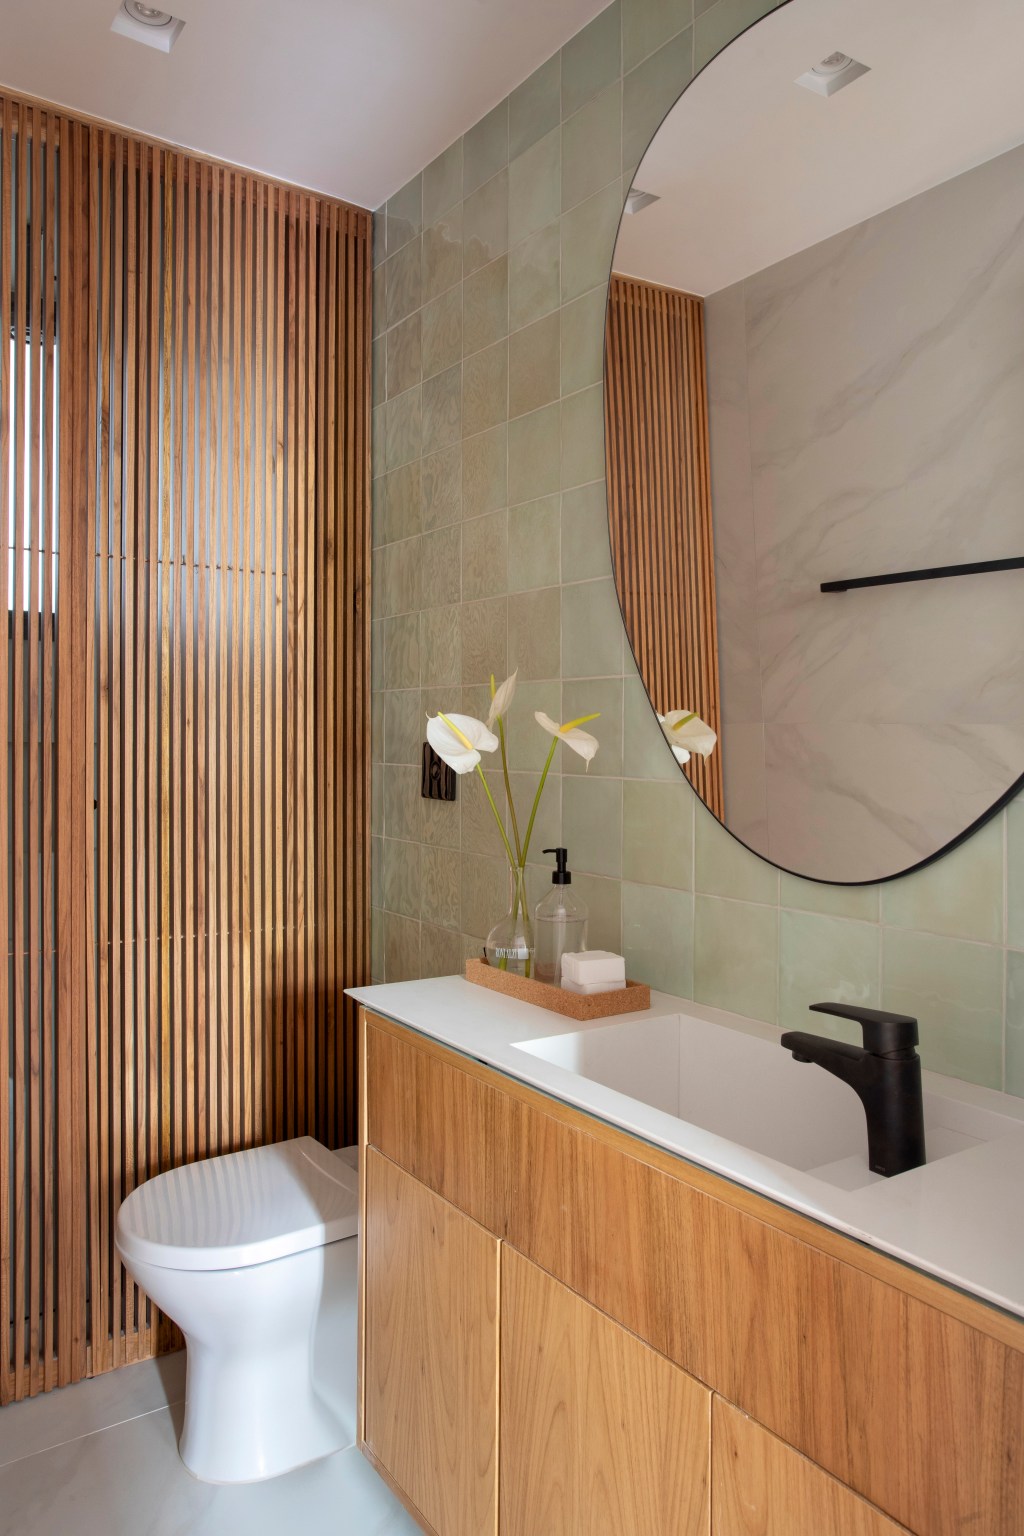 Apartamento de 110 m² ganha décor aconchegante com clima carioca. Projeto de Rafael Ramos. Na foto, lavabo com parede ripada.